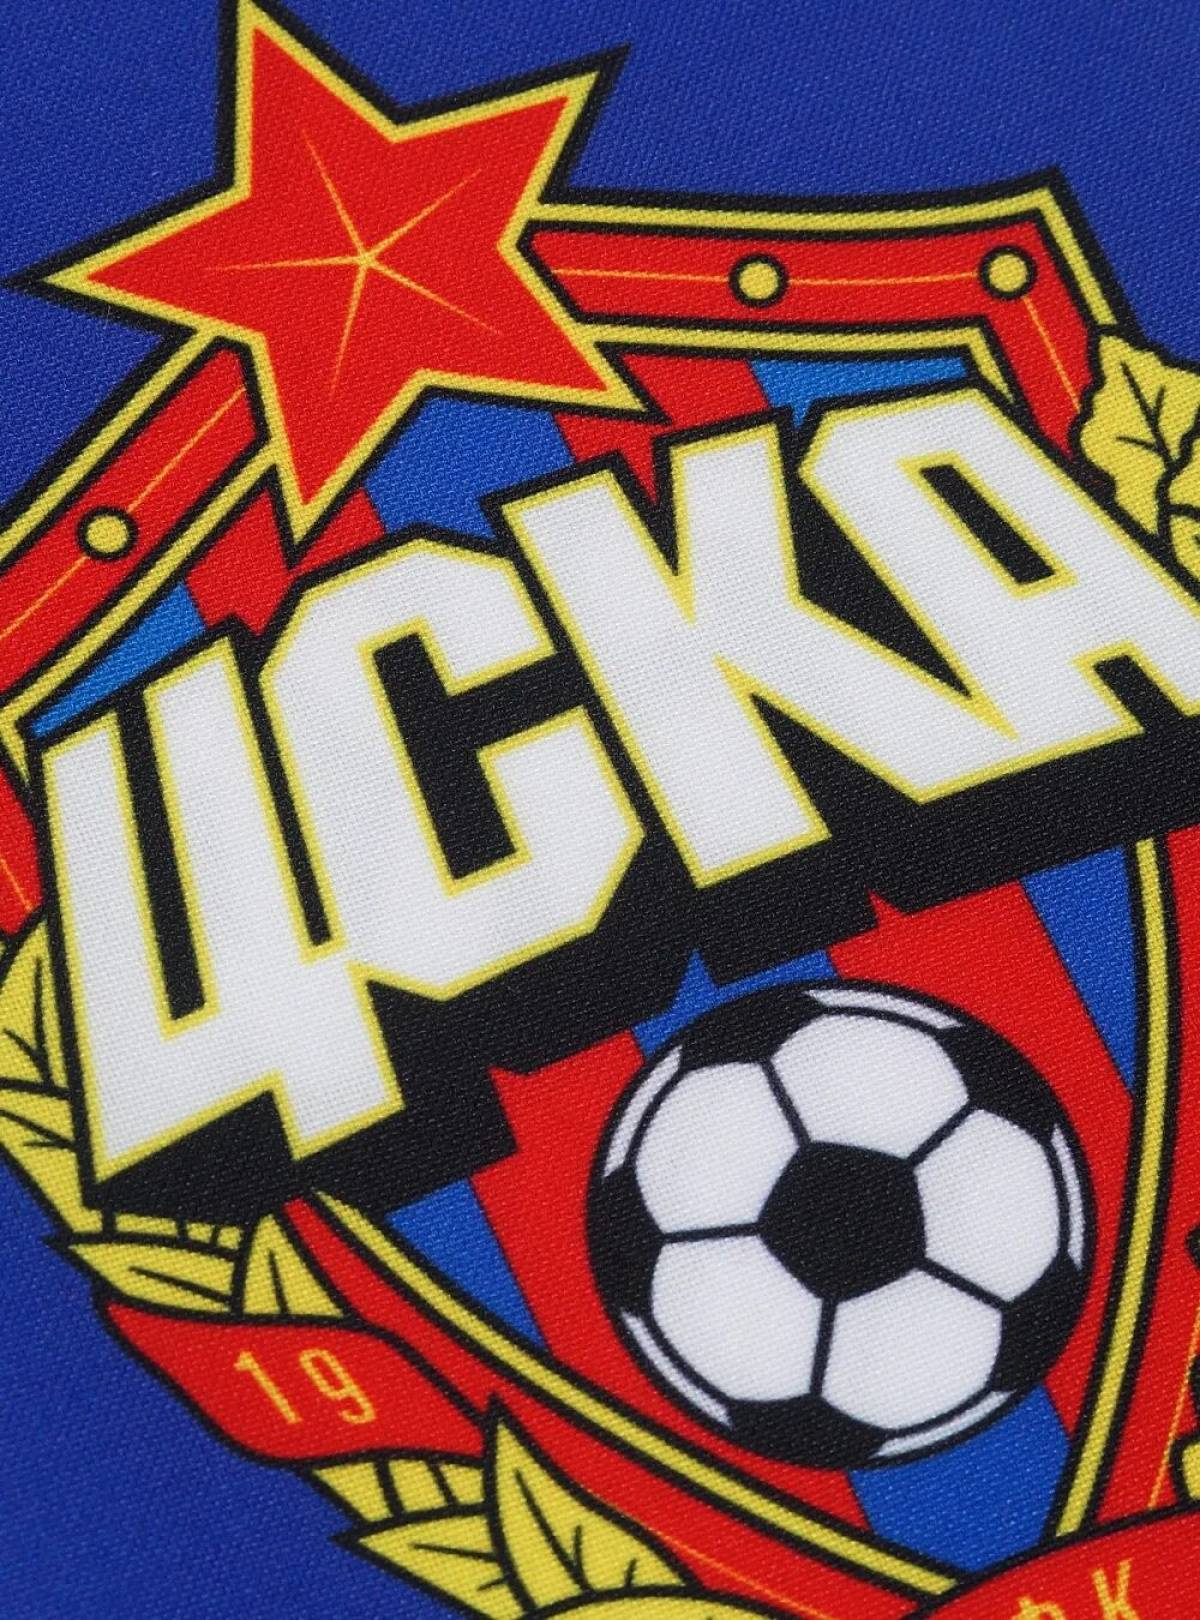 Fun coloring of the CSKA logo